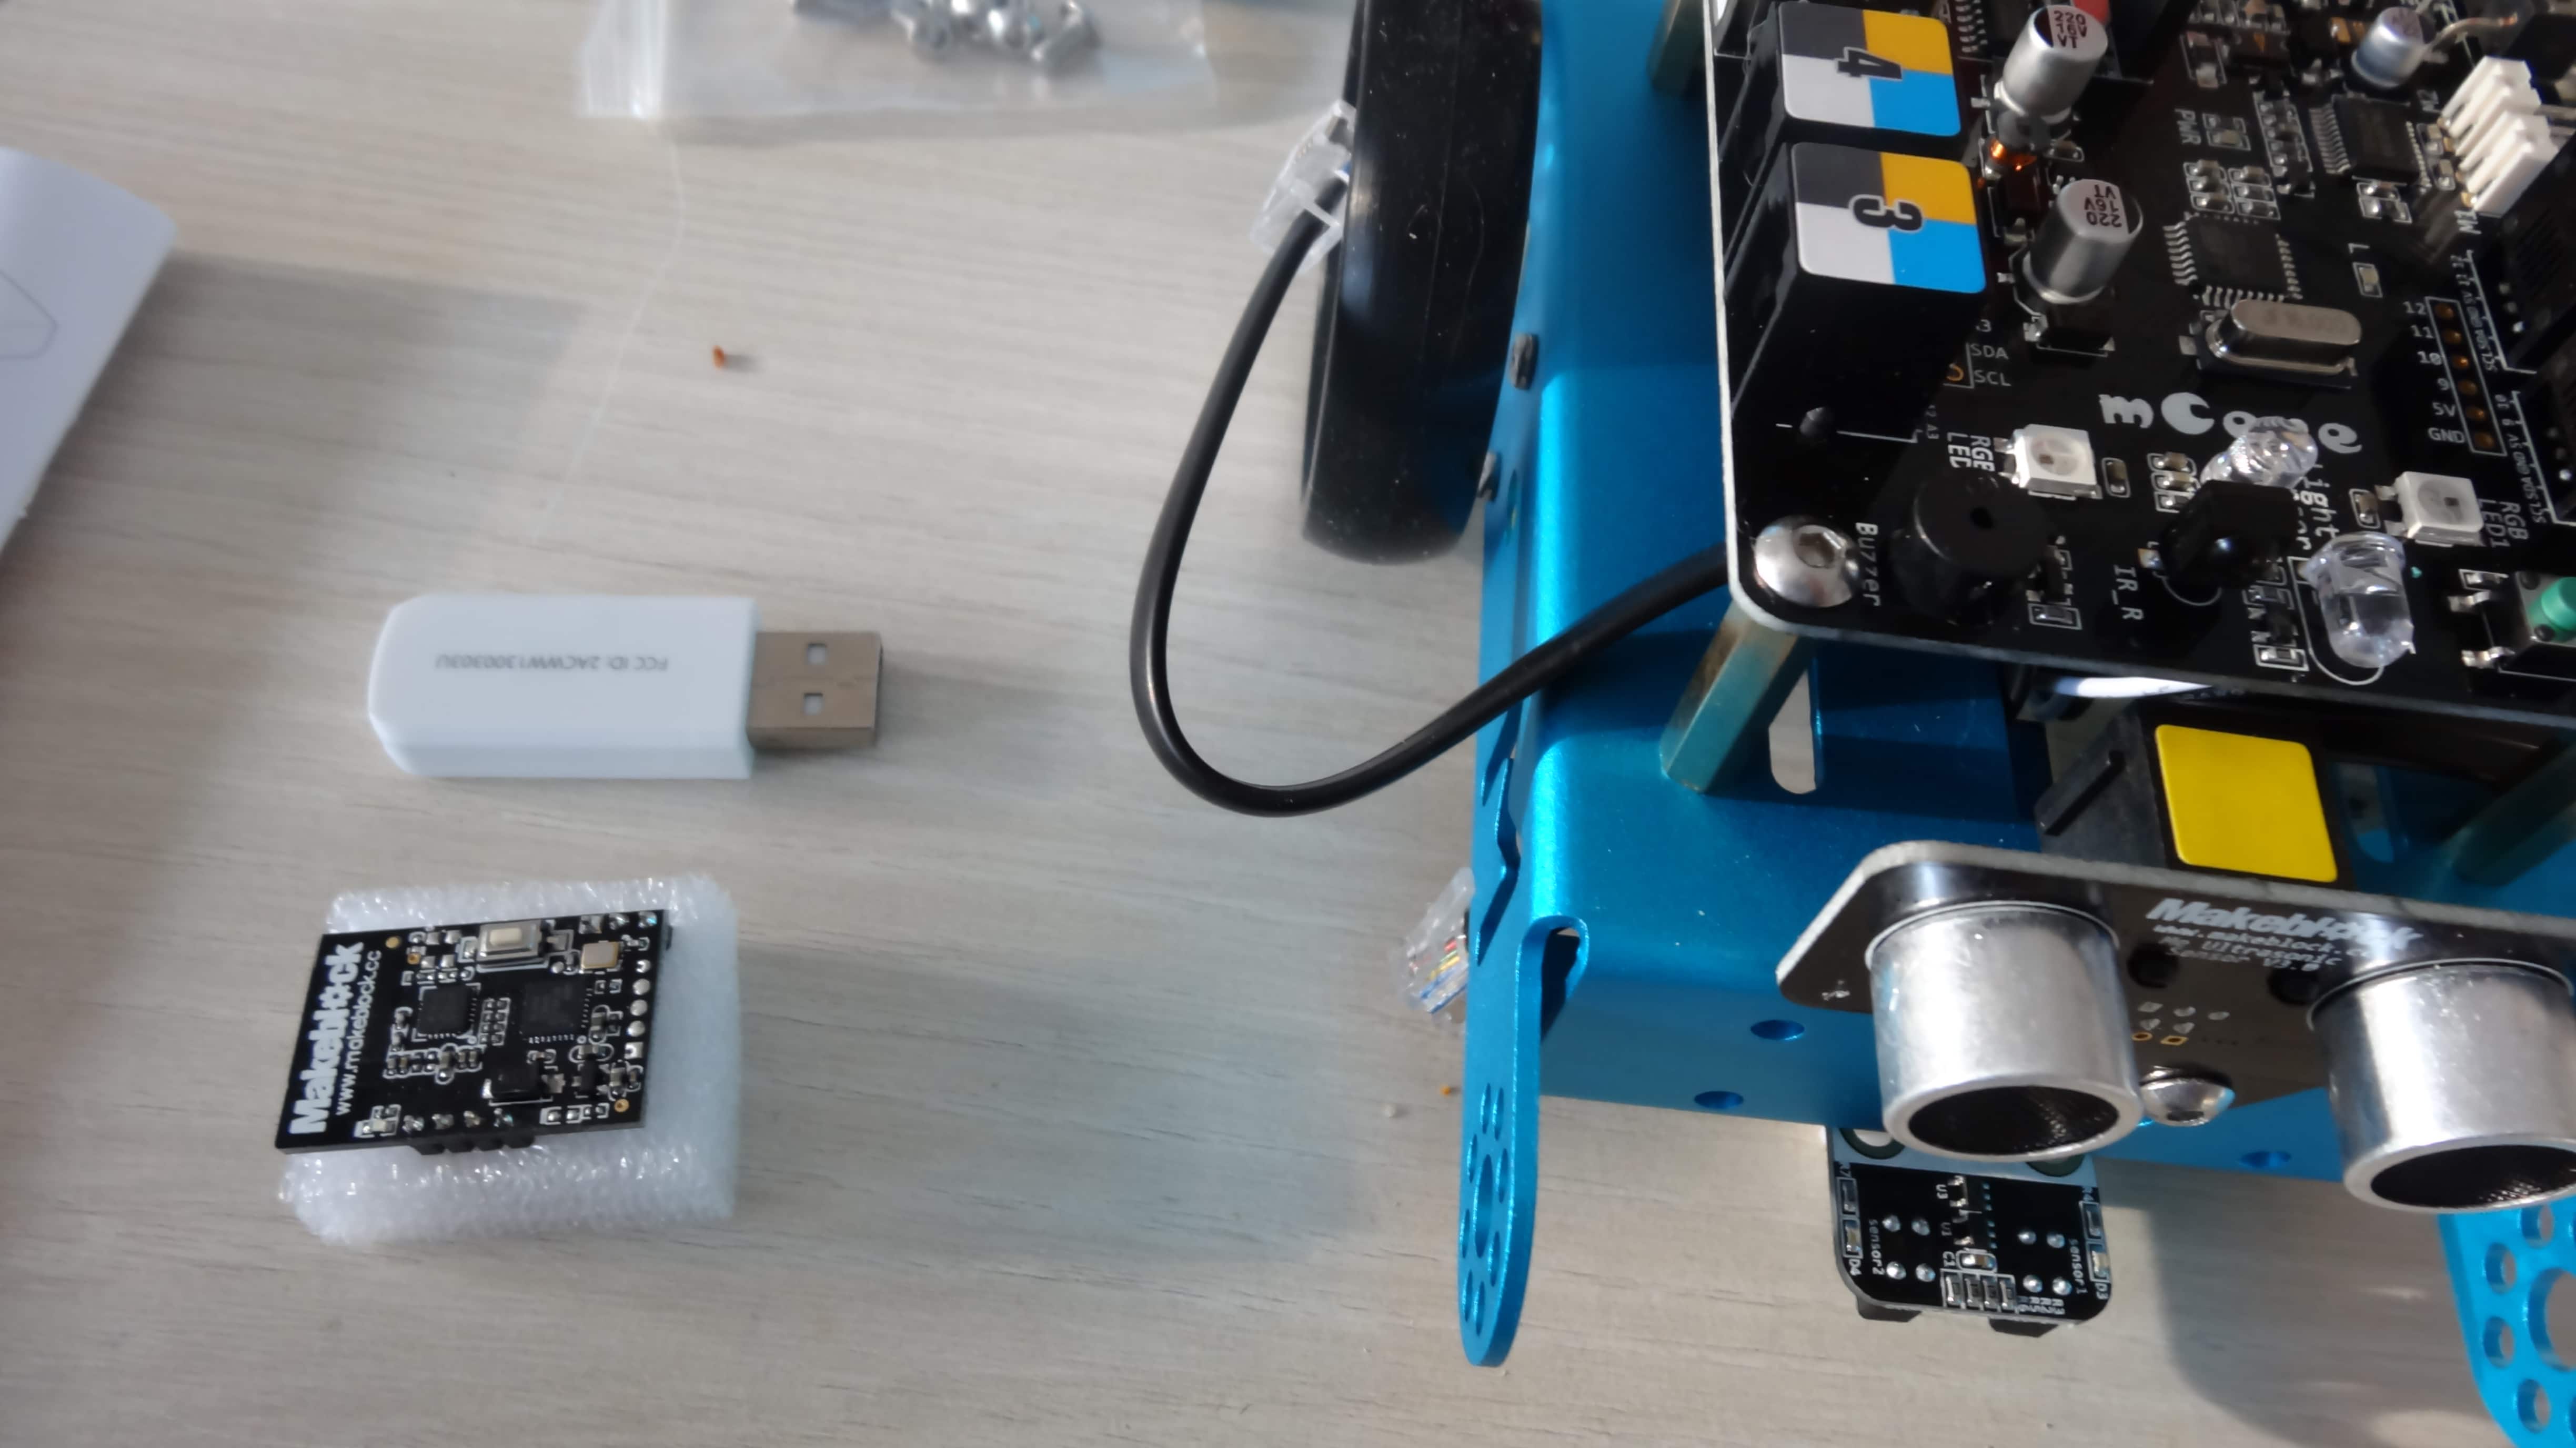 mbot-blue-un-robot-educatif-et-programmable-en-version-2-4-g-tres-interessant-legaragedupc-fr-34